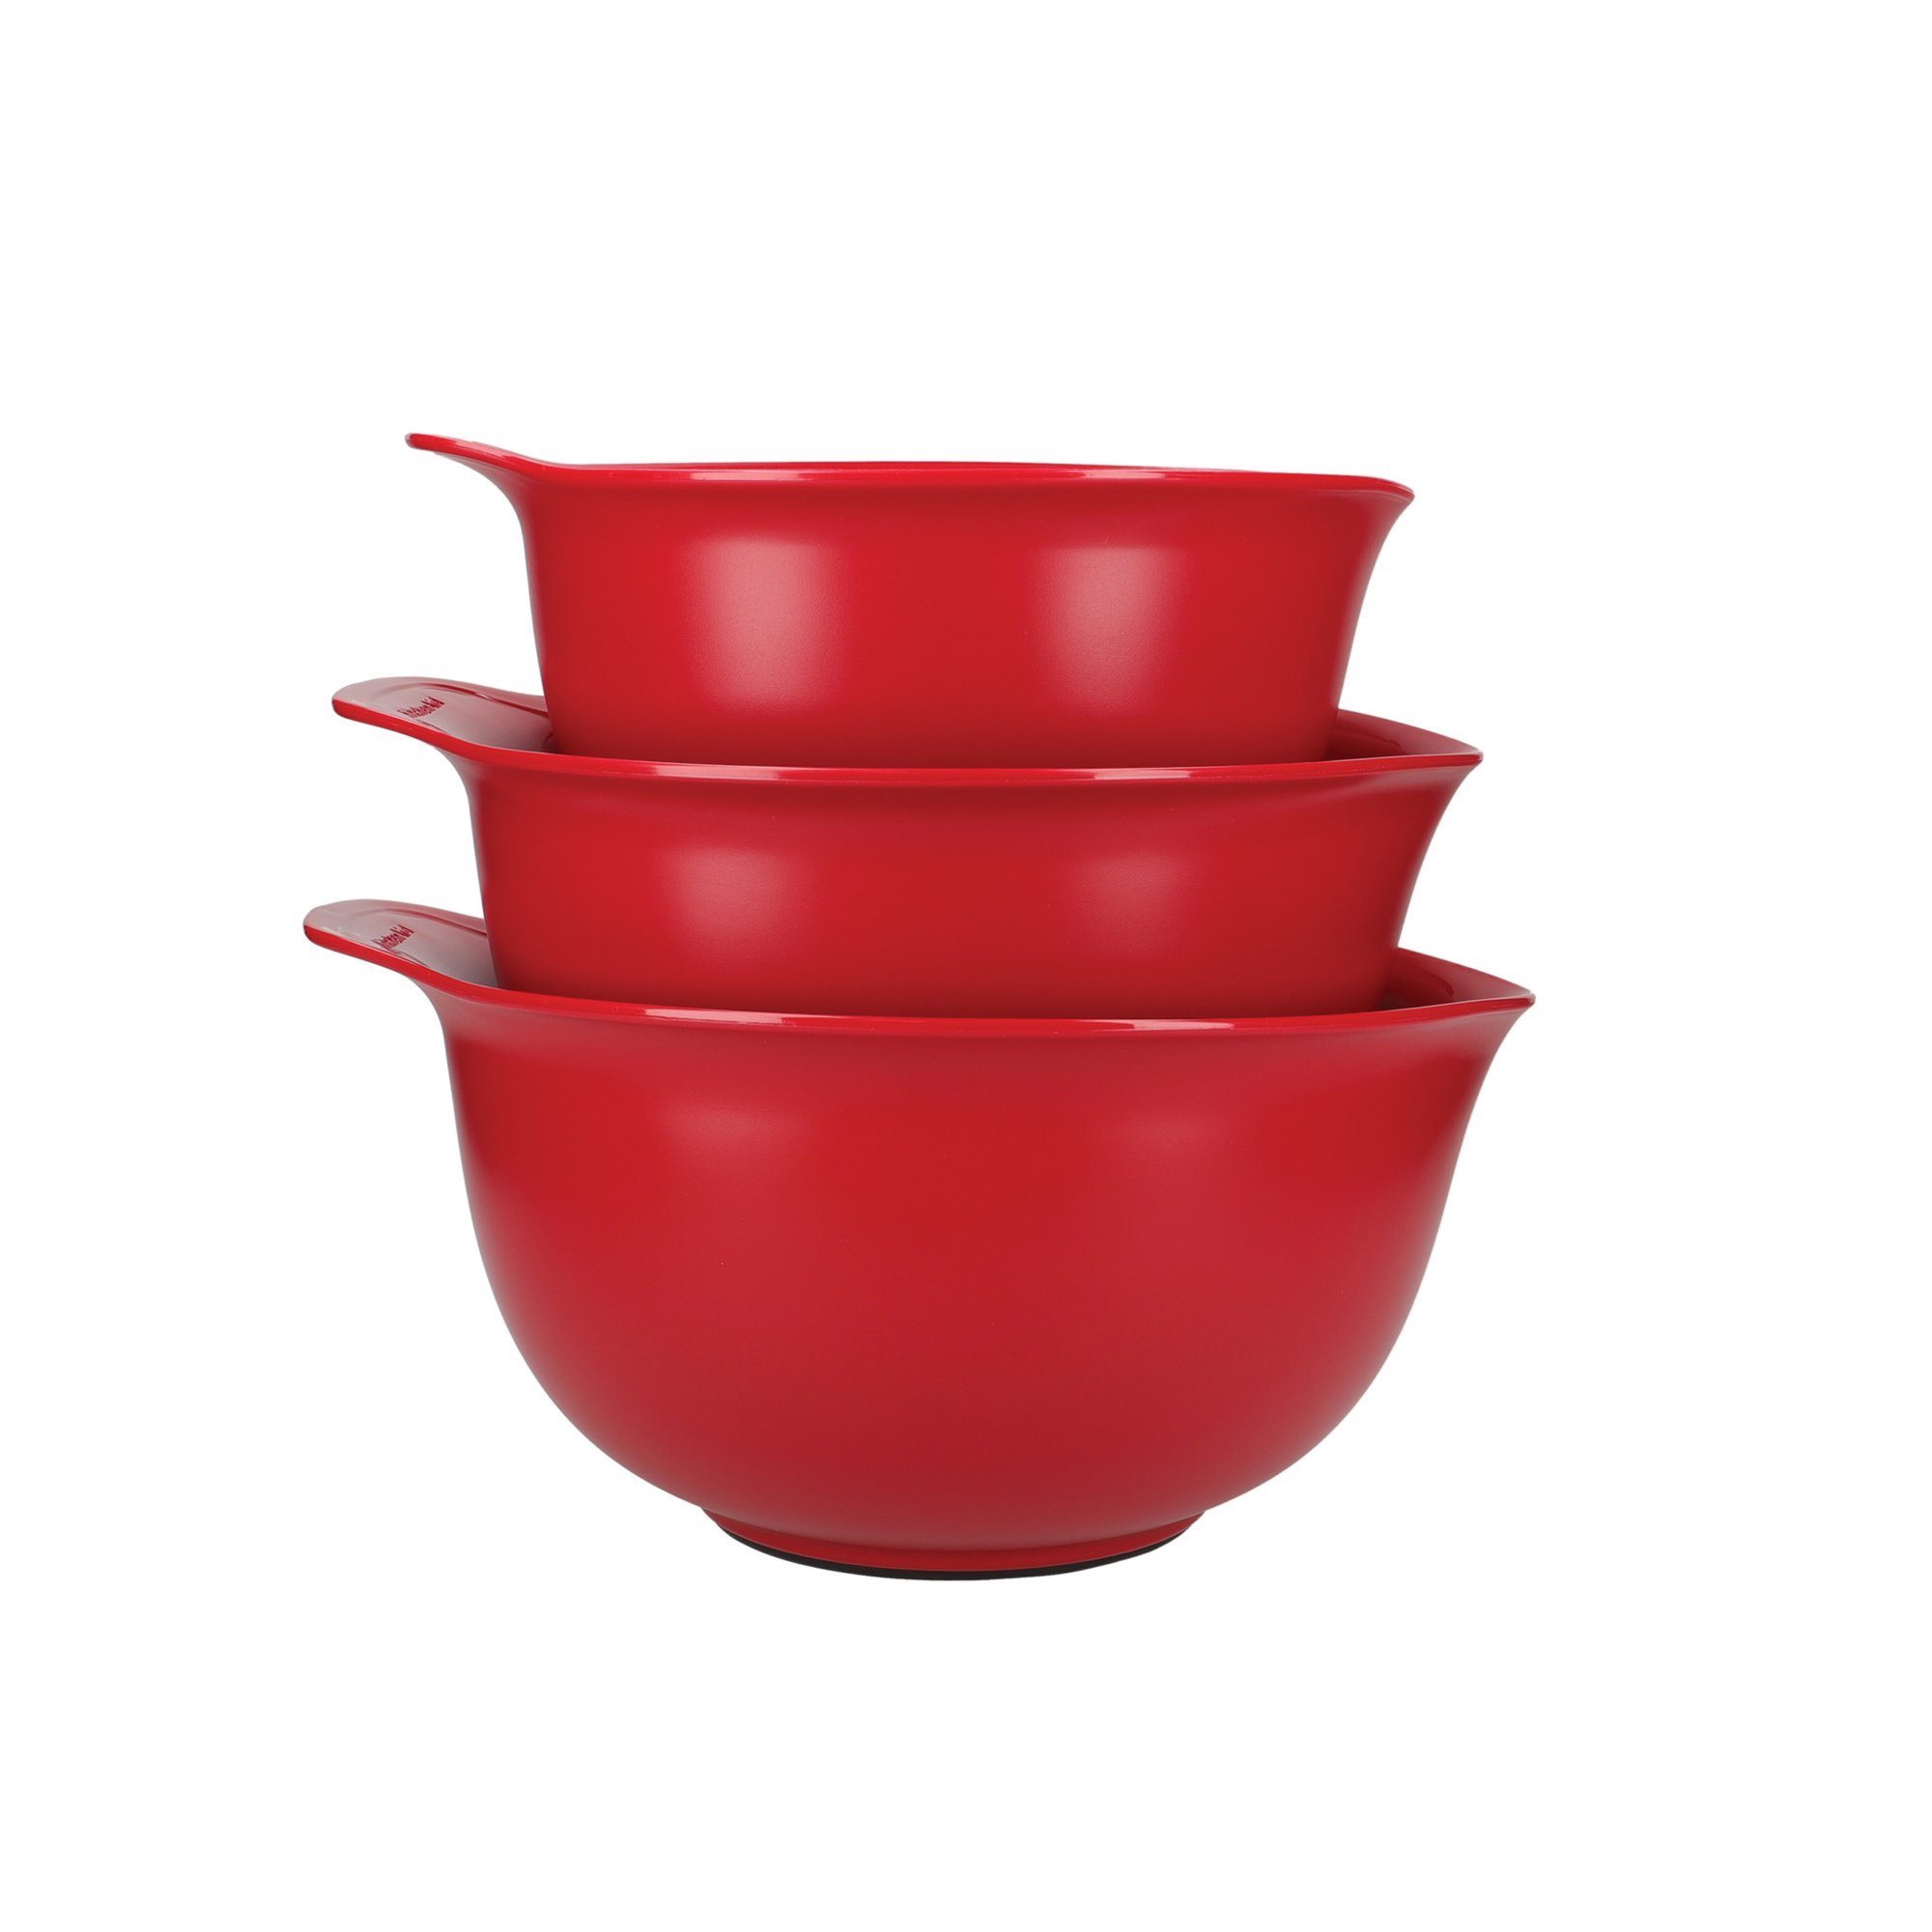 KitchenAid Mixing Bowls, Set of 3